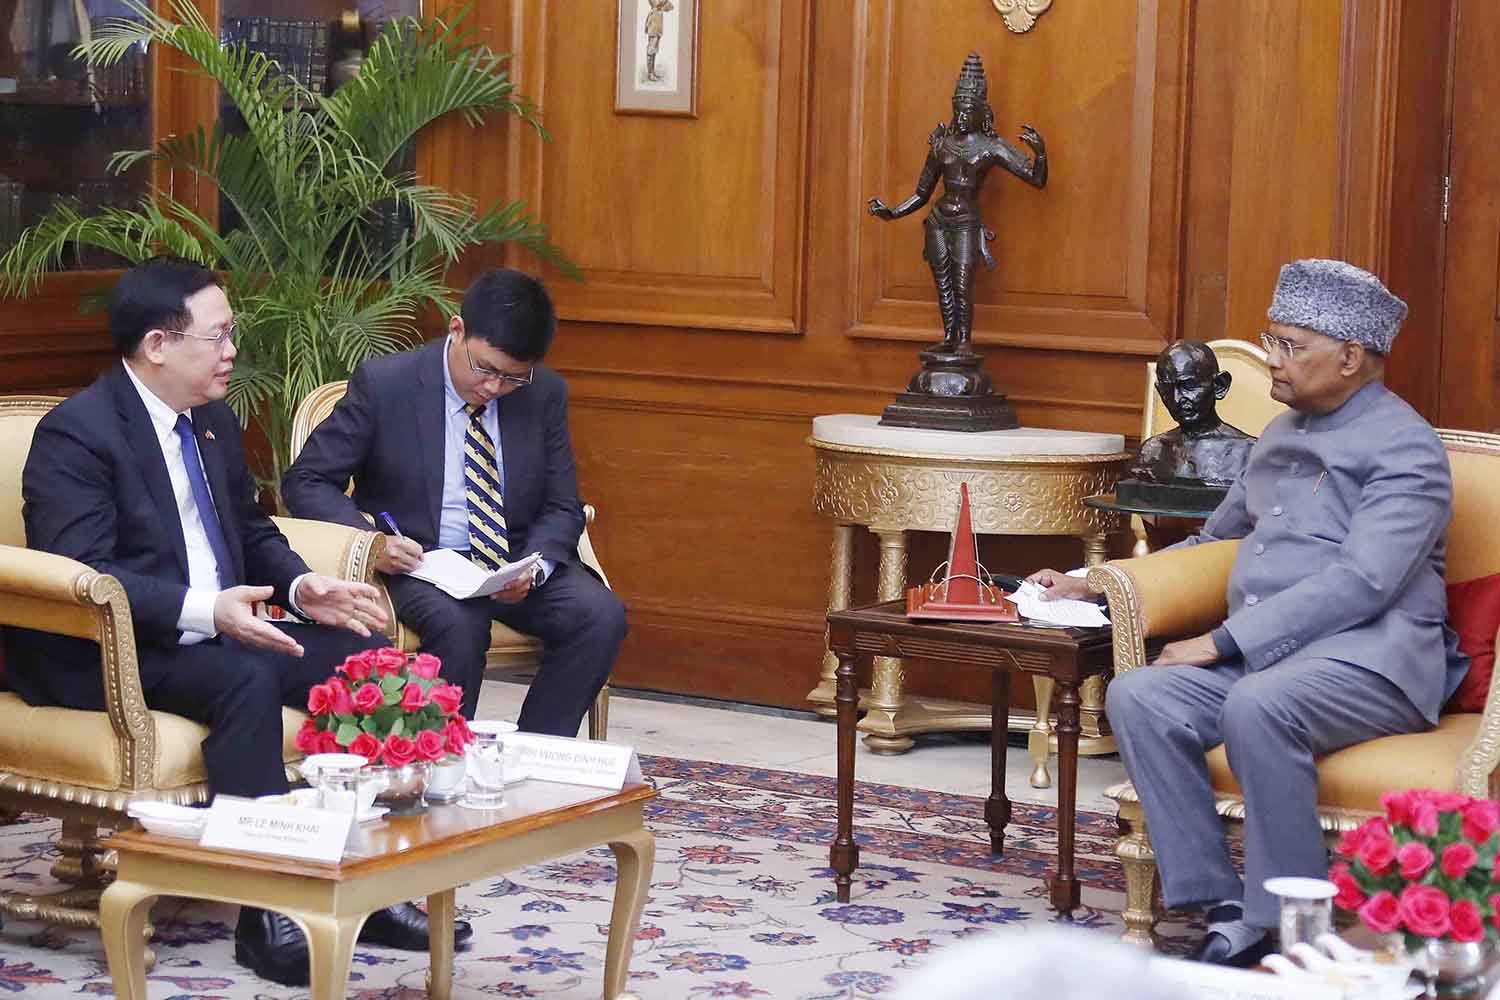 Quốc hội sẽ đóng góp vai trò quan trọng thúc đẩy hợp tác Việt Nam - Hàn Quốc, Việt Nam - Ấn Độ